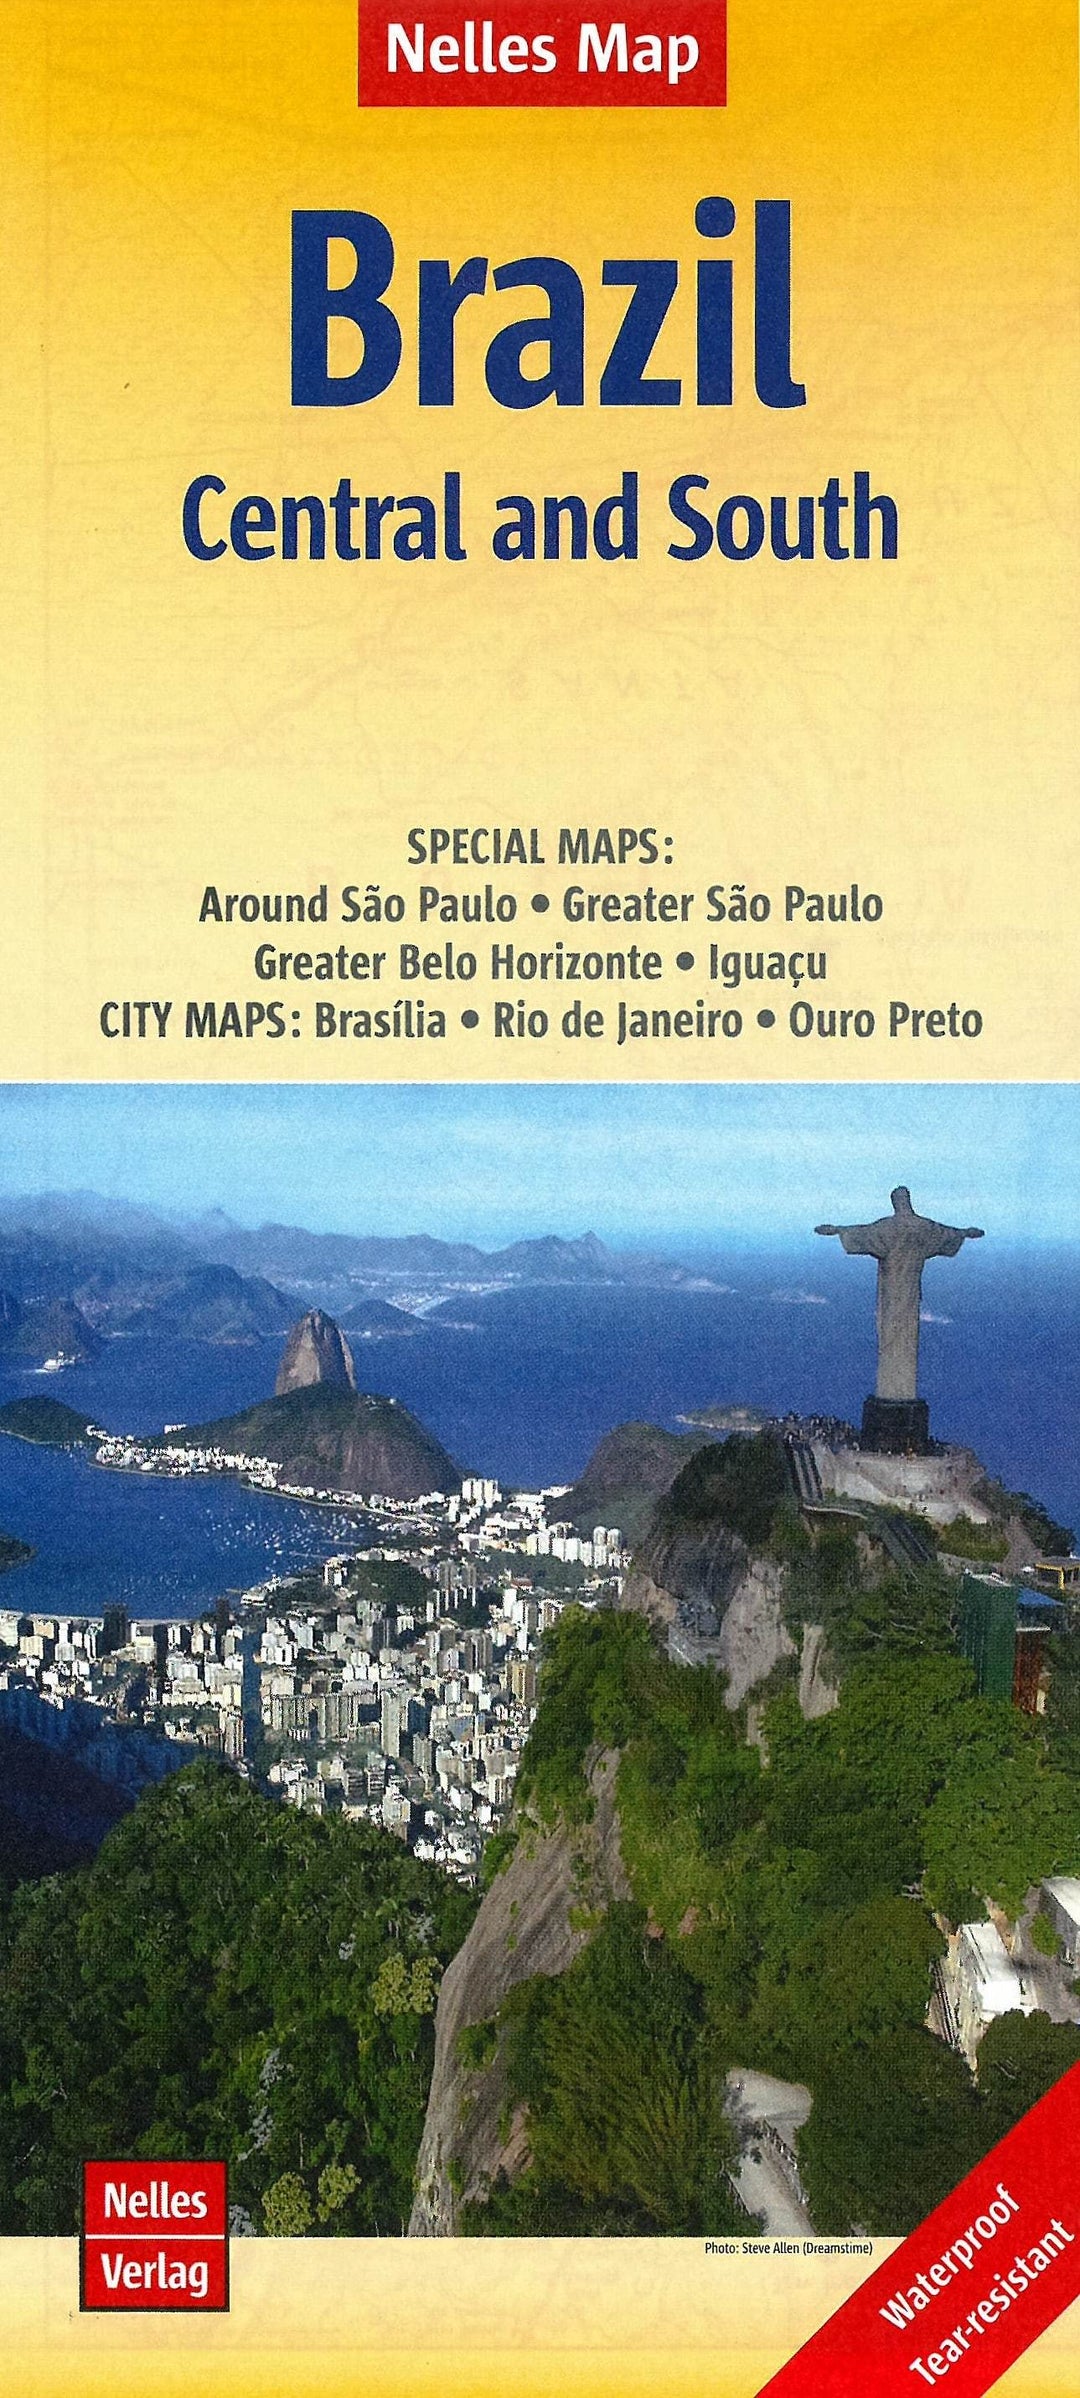 Carte routière imperméable - Brésil Centre & sud | Nelles Map carte pliée Nelles Verlag 